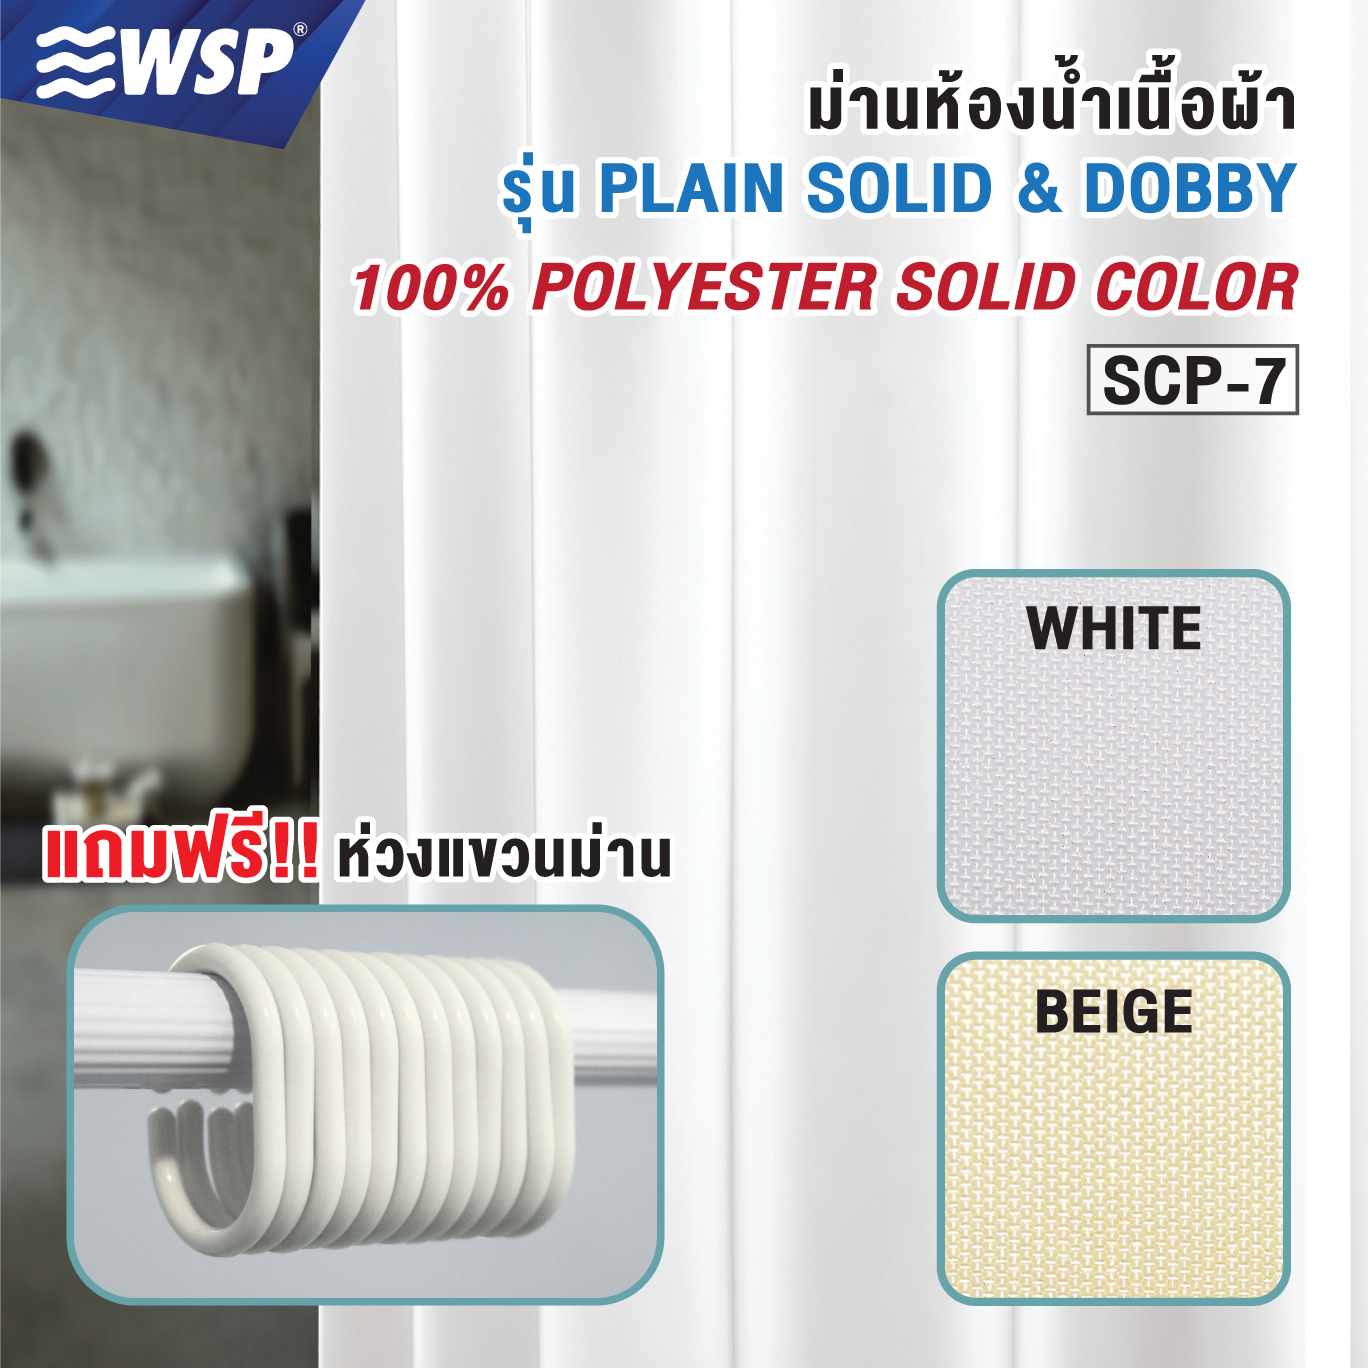 ผ้าม่านห้องน้ำเนื้อผ้า (100% POLYESTER SOLID COLOR) ขนาด180x180ซม. รุ่น SCP-7